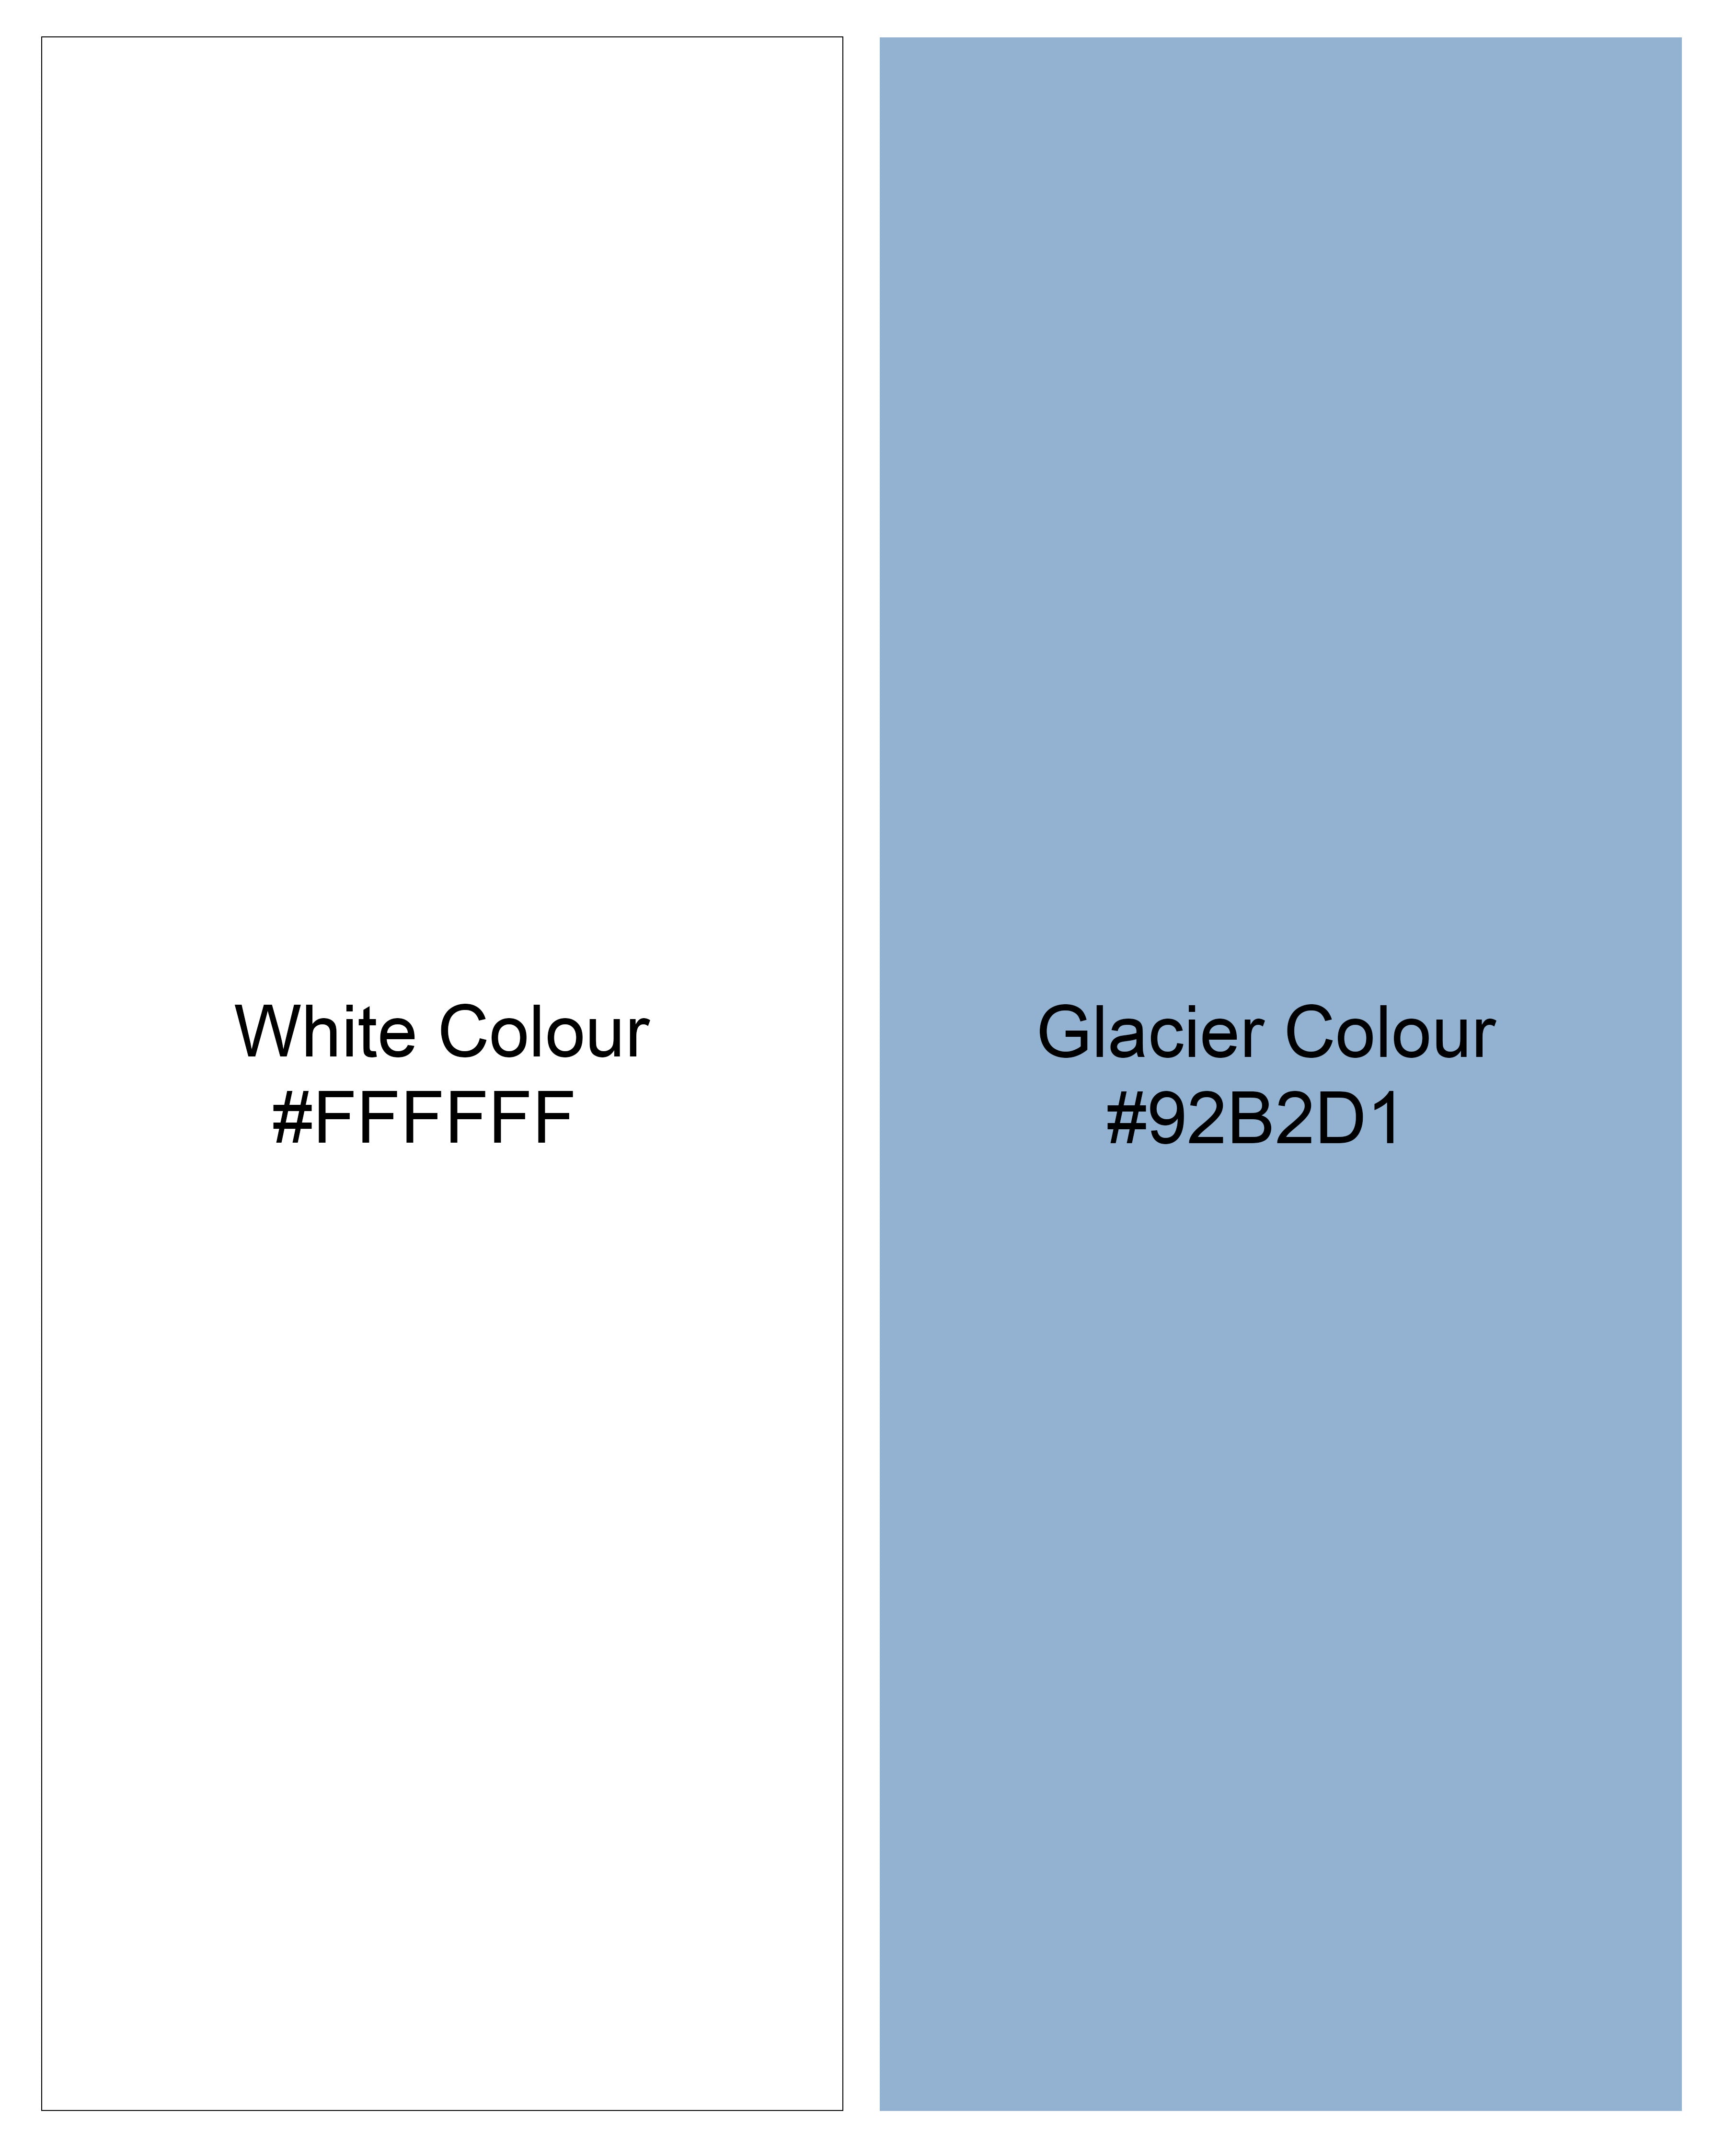 Glacier Blue and White Striped Premium Cotton Kurta Shirt 9055-KS-38, 9055-KS-H-38, 9055-KS-39, 9055-KS-H-39, 9055-KS-40, 9055-KS-H-40, 9055-KS-42, 9055-KS-H-42, 9055-KS-44, 9055-KS-H-44, 9055-KS-46, 9055-KS-H-46, 9055-KS-48, 9055-KS-H-48, 9055-KS-50, 9055-KS-H-50, 9055-KS-52, 9055-KS-H-52